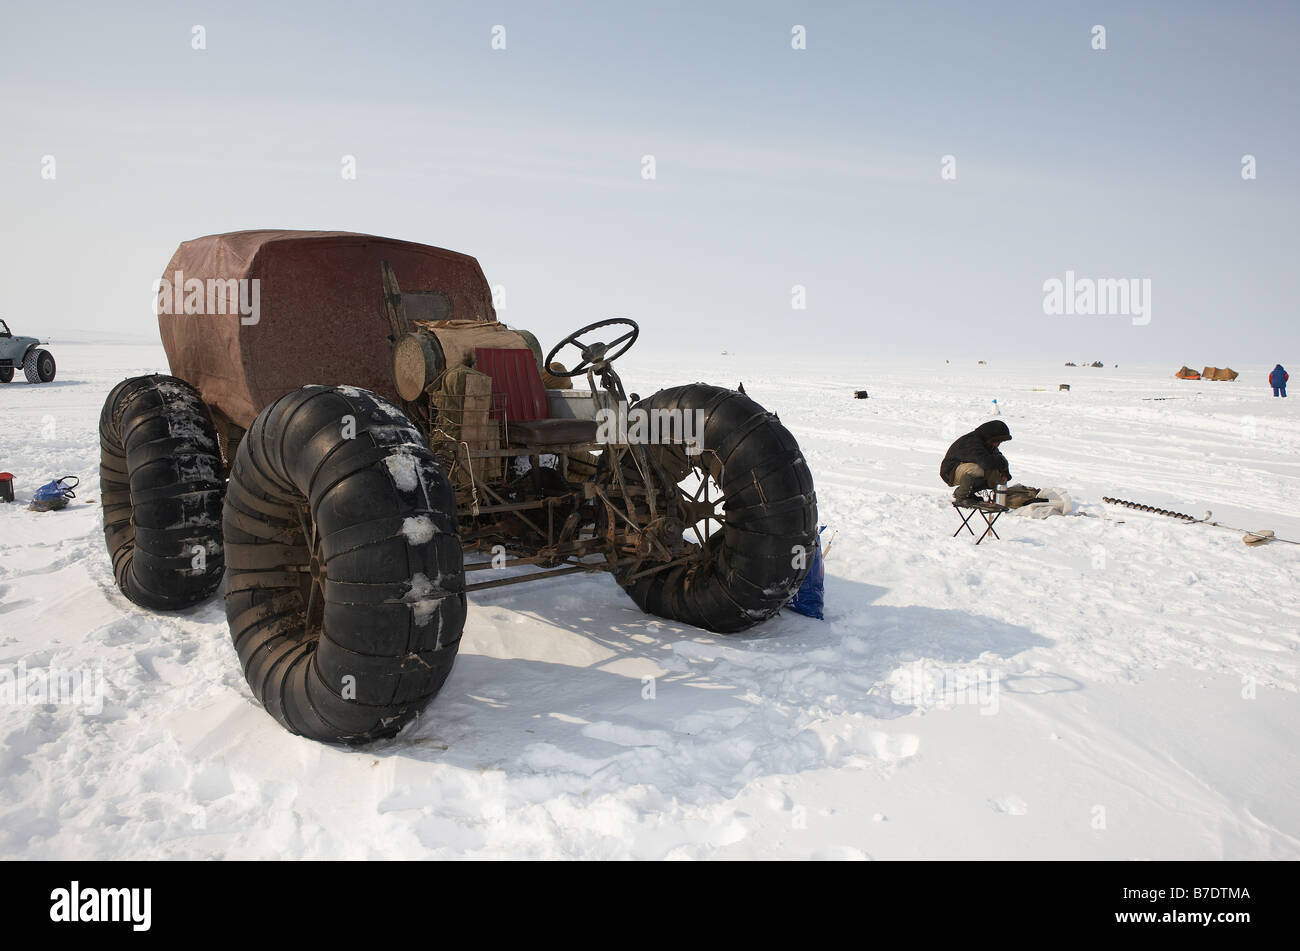 Ice fishing by homemade 4 wheeler motorbike,  Anadyr Chukotka, Siberia Russia Stock Photo